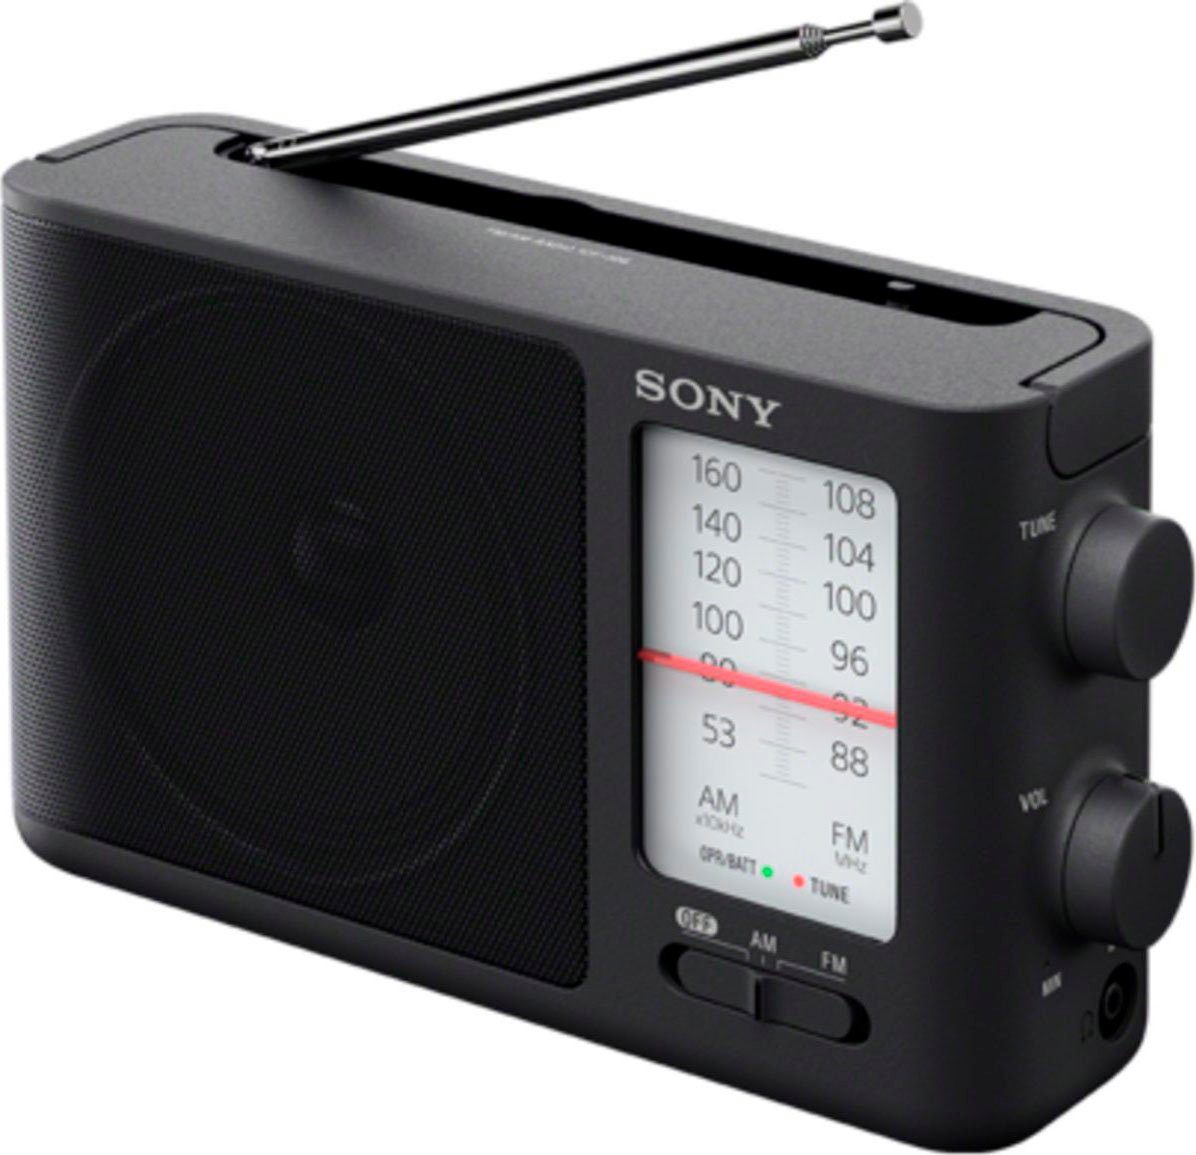 (AM-Tuner, 0,1 W) Sony Radio ICF506 FM-Tuner,